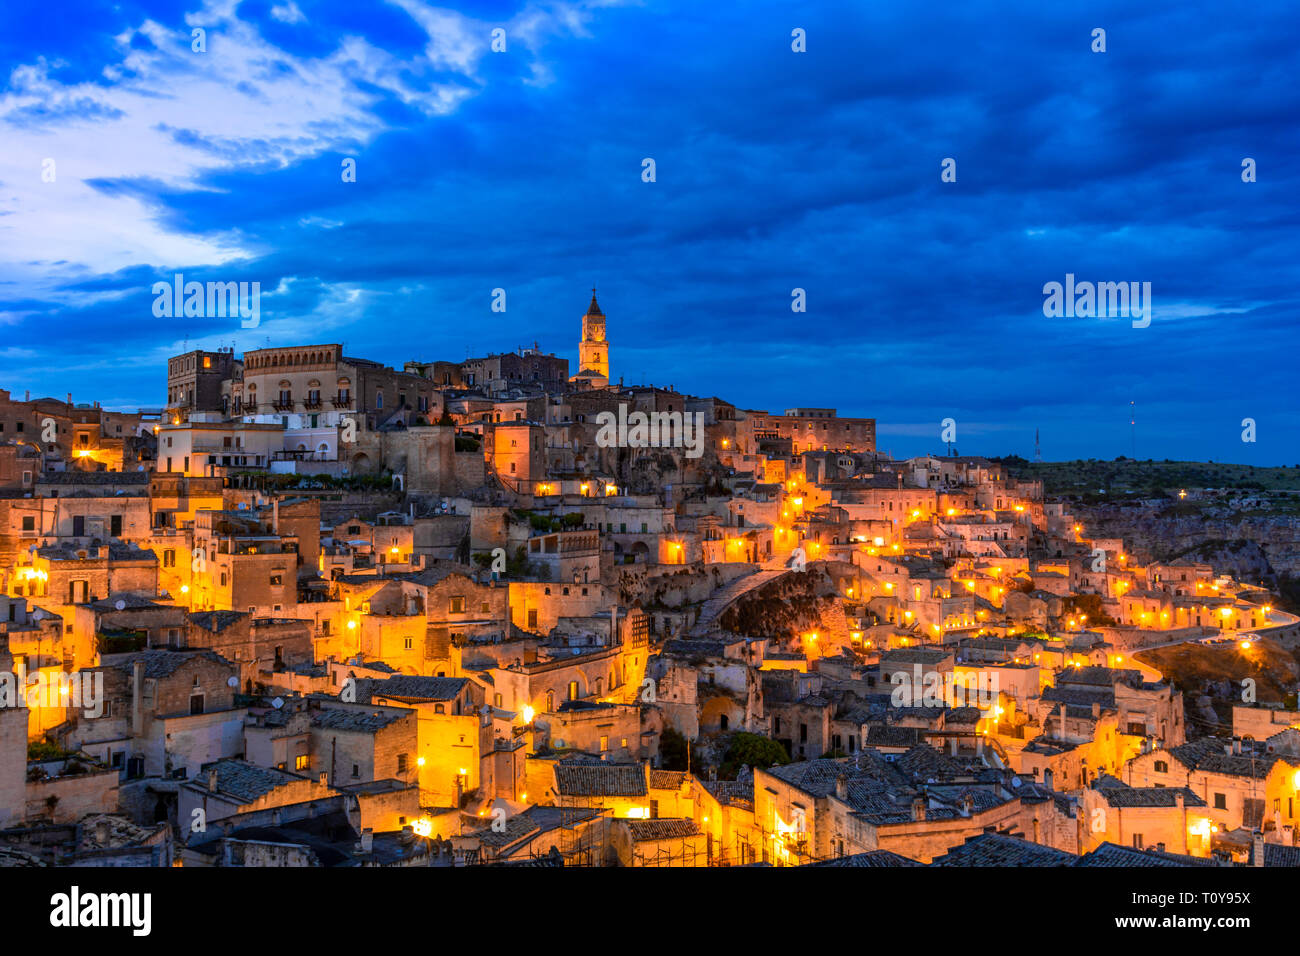 Matera, Basilicata, Italia: panoramica della città vecchia - Sassi di Matera, capitale europea della cultura, all'alba Foto Stock